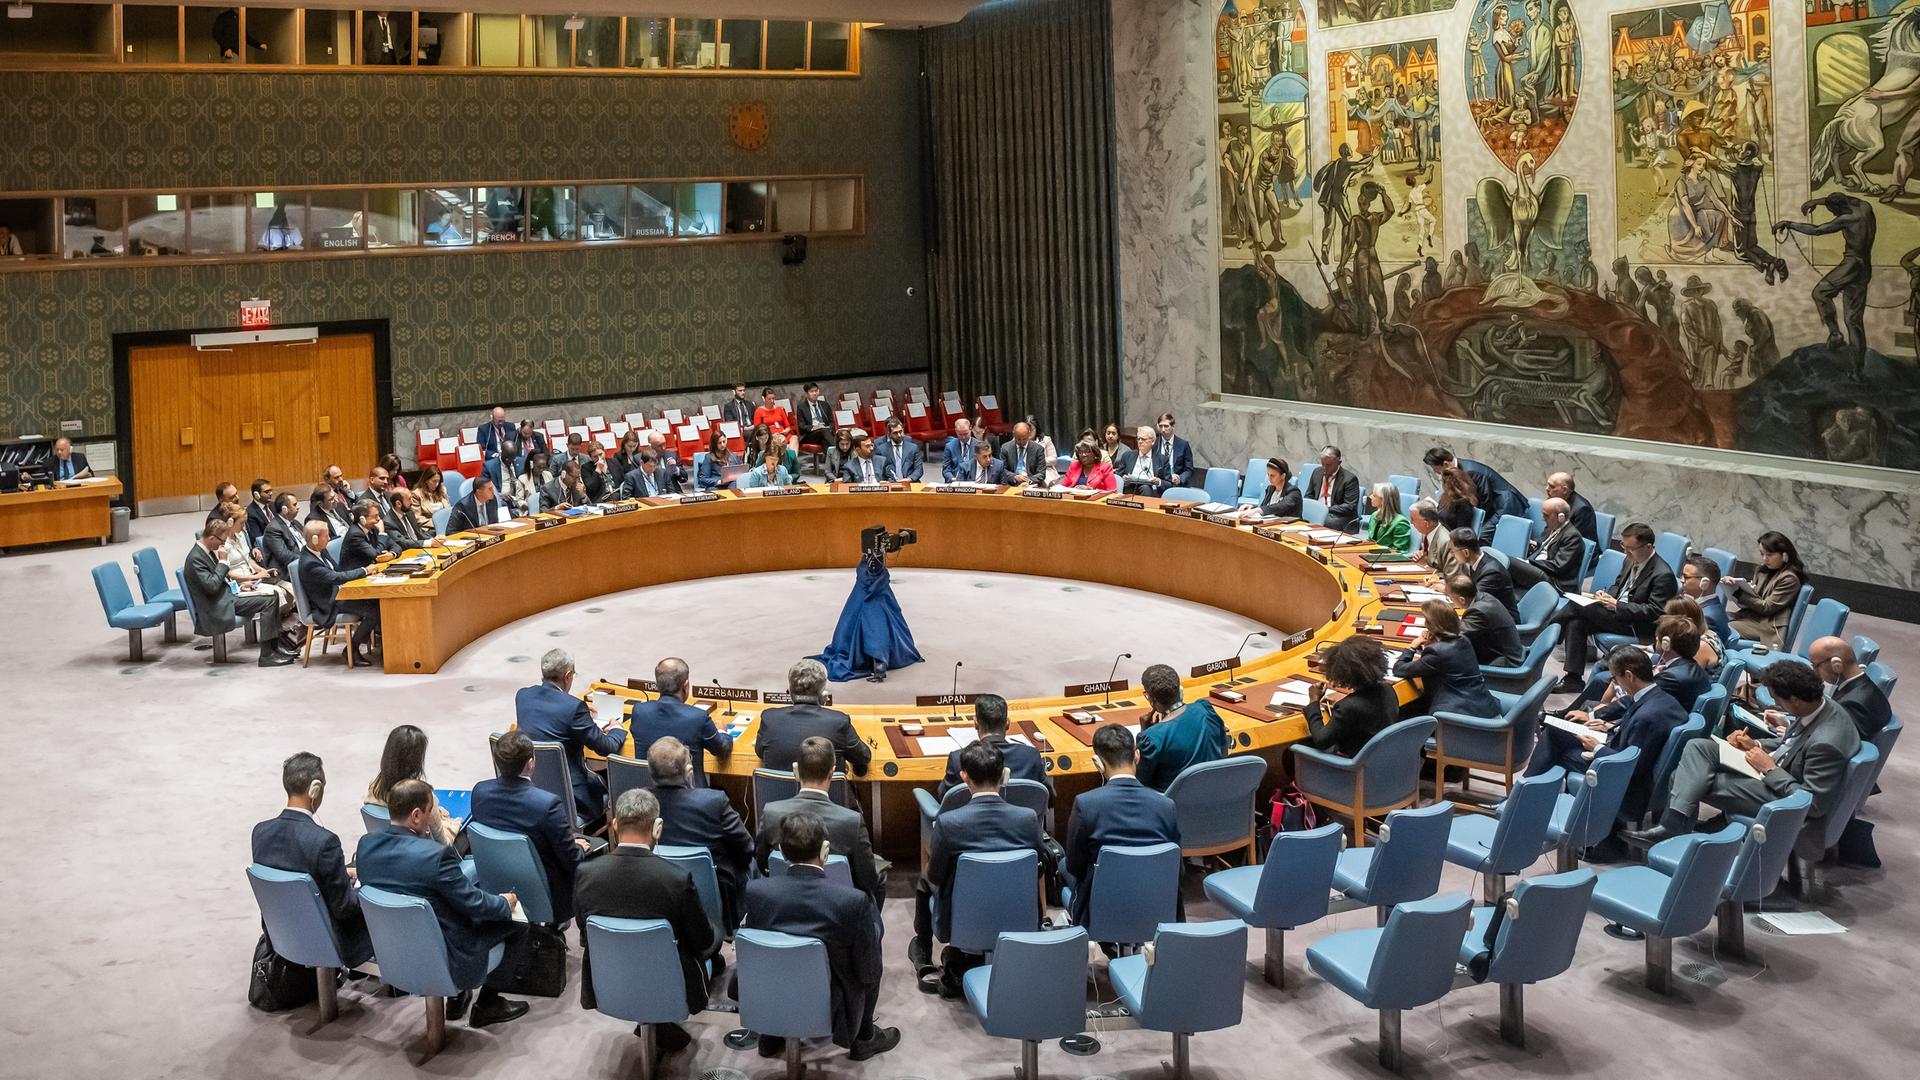 Näkymä turvallisuusneuvoston saliin, jossa kaiutinpöytä on asetettu ympyrään sinisillä tuoleilla ja taidokkaalla seinämaalauksella.